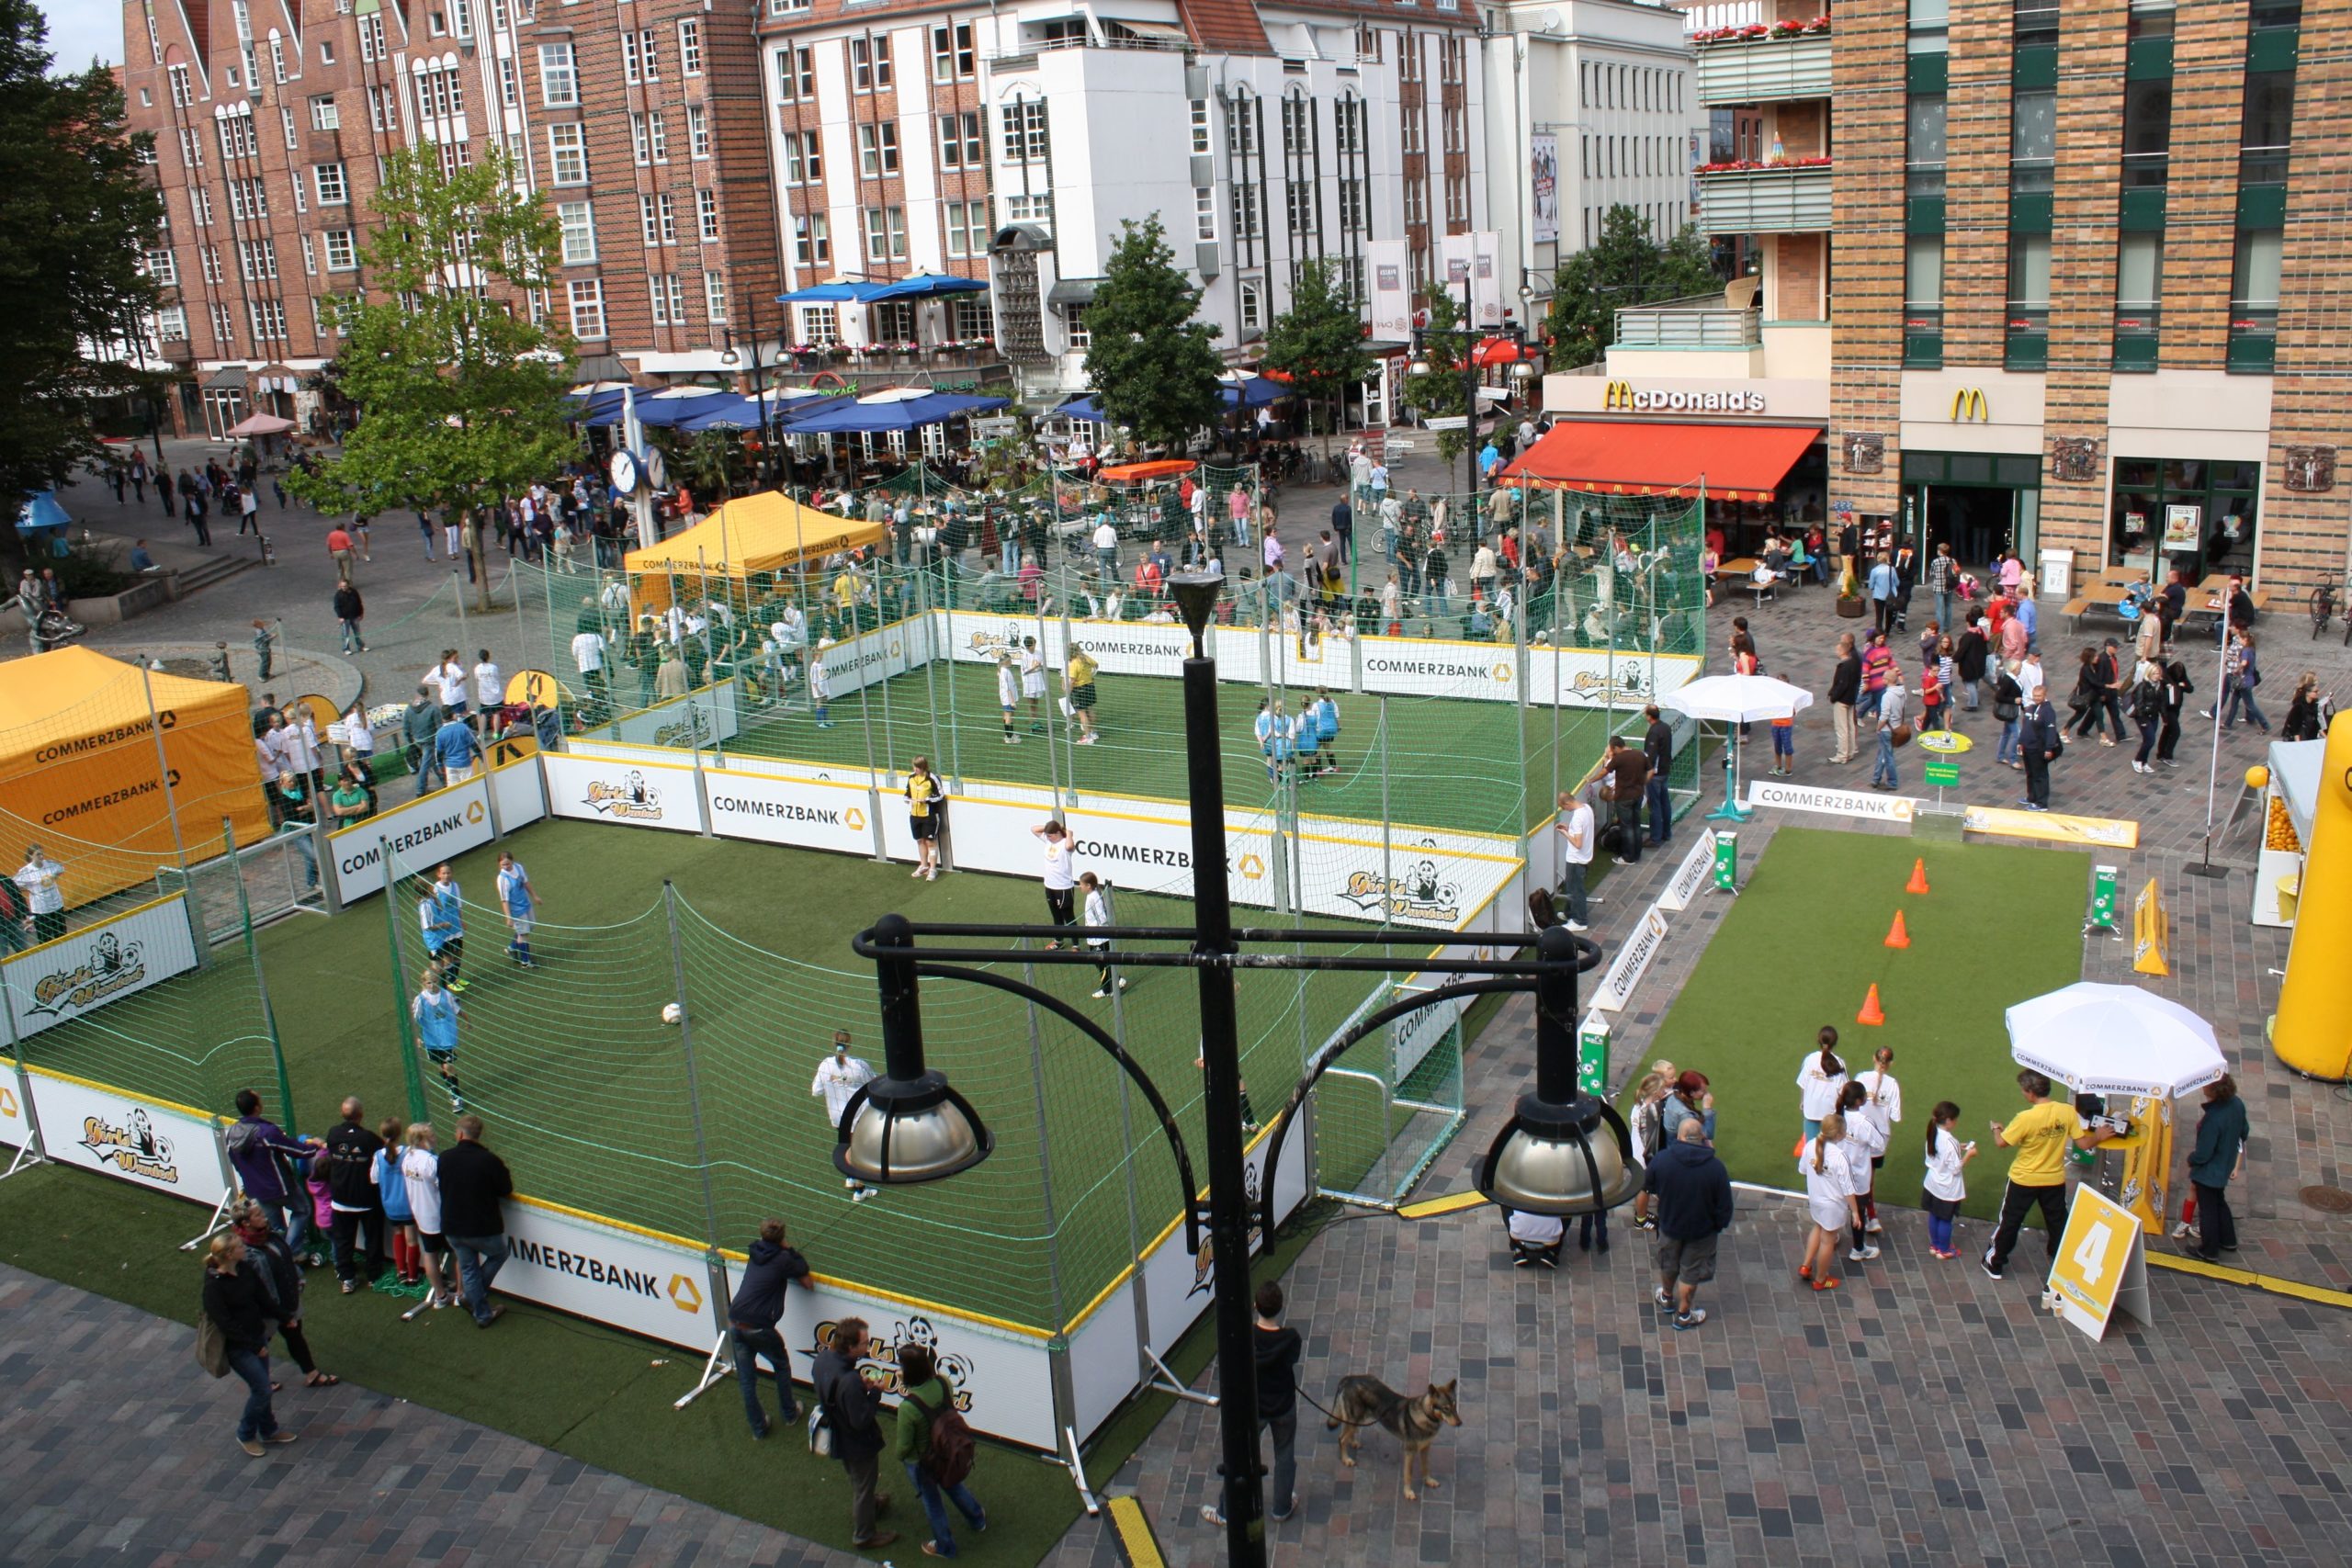 Girls Wanted Aktionstag in einer Innenstadt. Auf dem Bild sind zwei Soccer Courts sowie ein Dribbelparcours zu sehen.